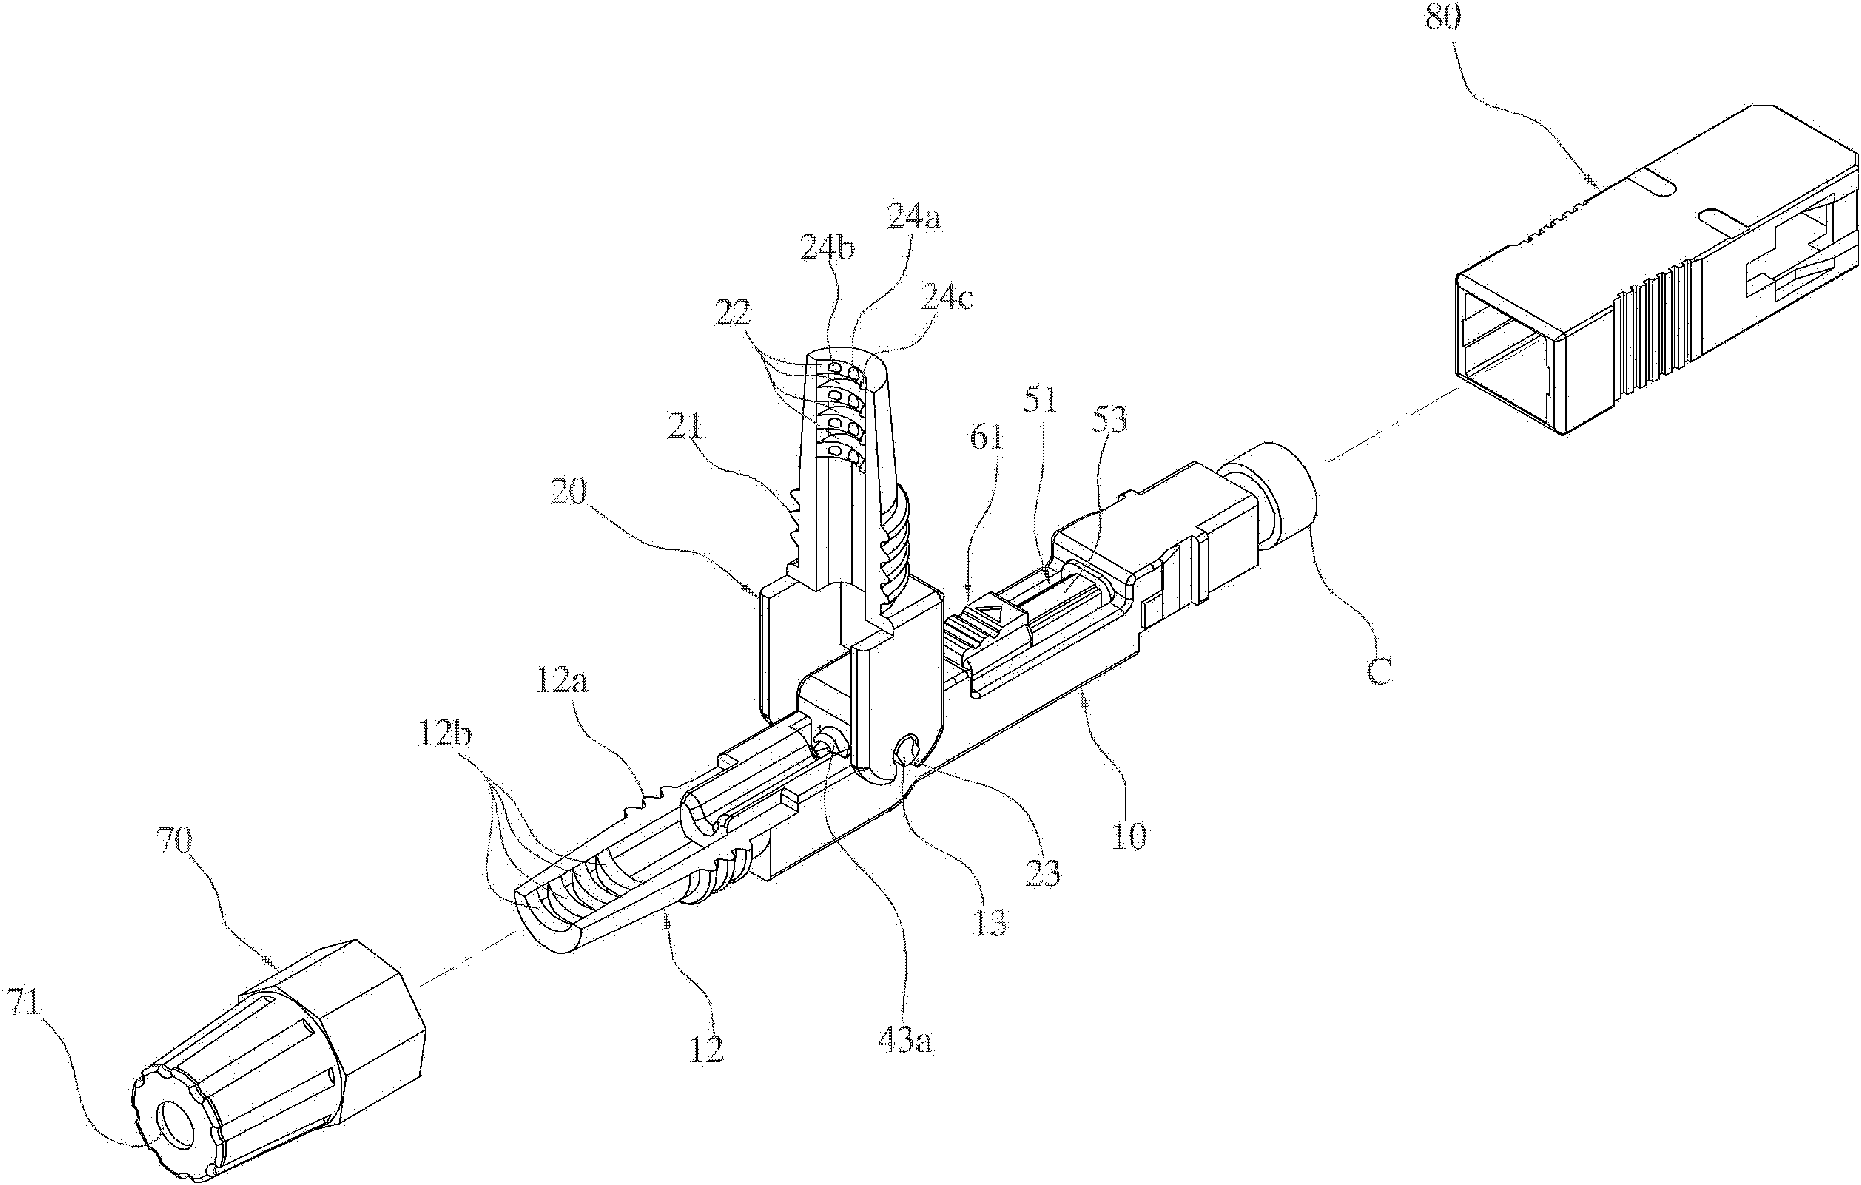 Field assembling optical connector